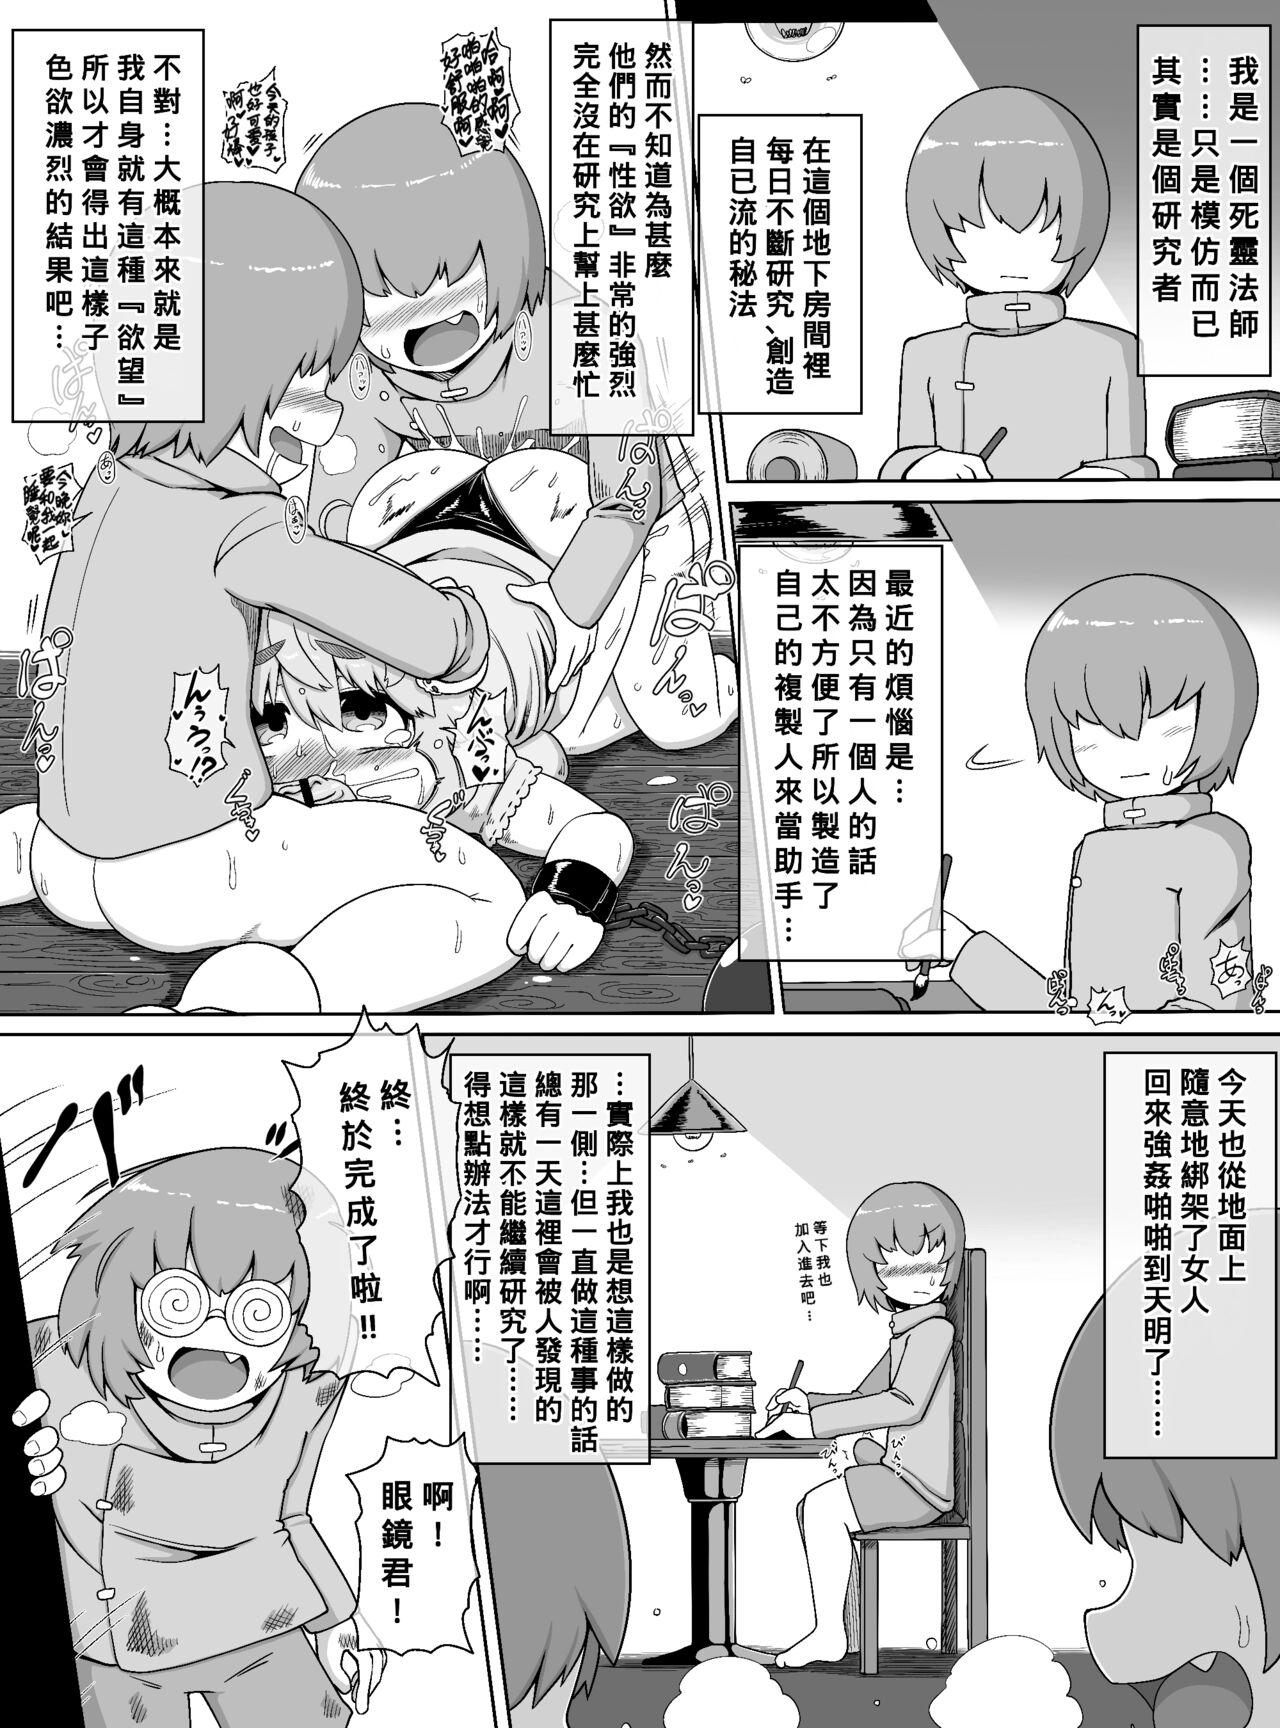 Spoon Choushin Bakunyuu Muchimuchi Kyonshii ga Kyokon Shota Gundan no Seishori Onaho ni sareru dake no Manga - Original Porra - Page 2